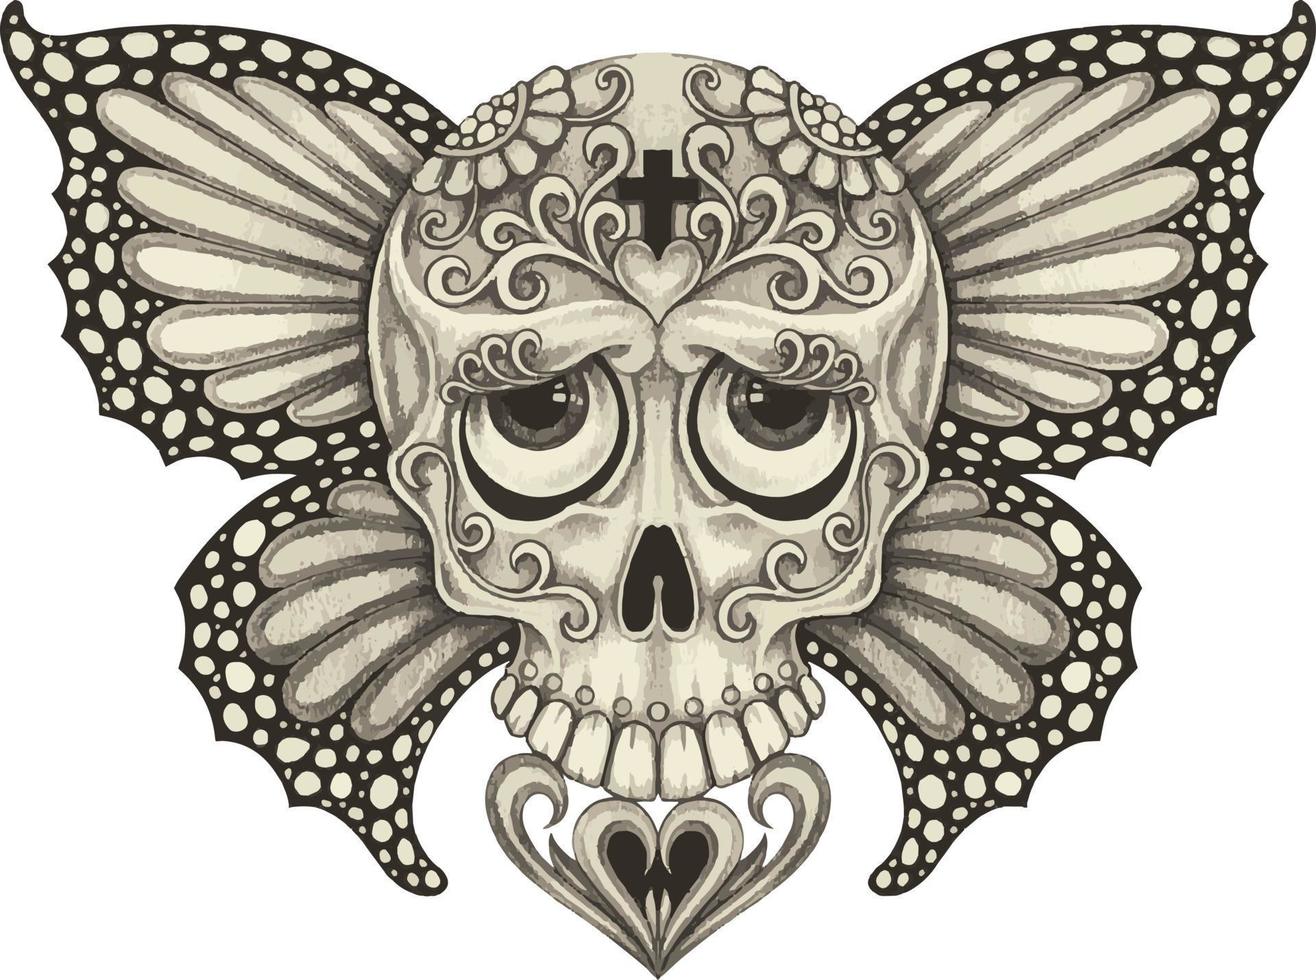 cráneo de mariposa de fantasía de arte. dibujo a mano y hacer vector gráfico.